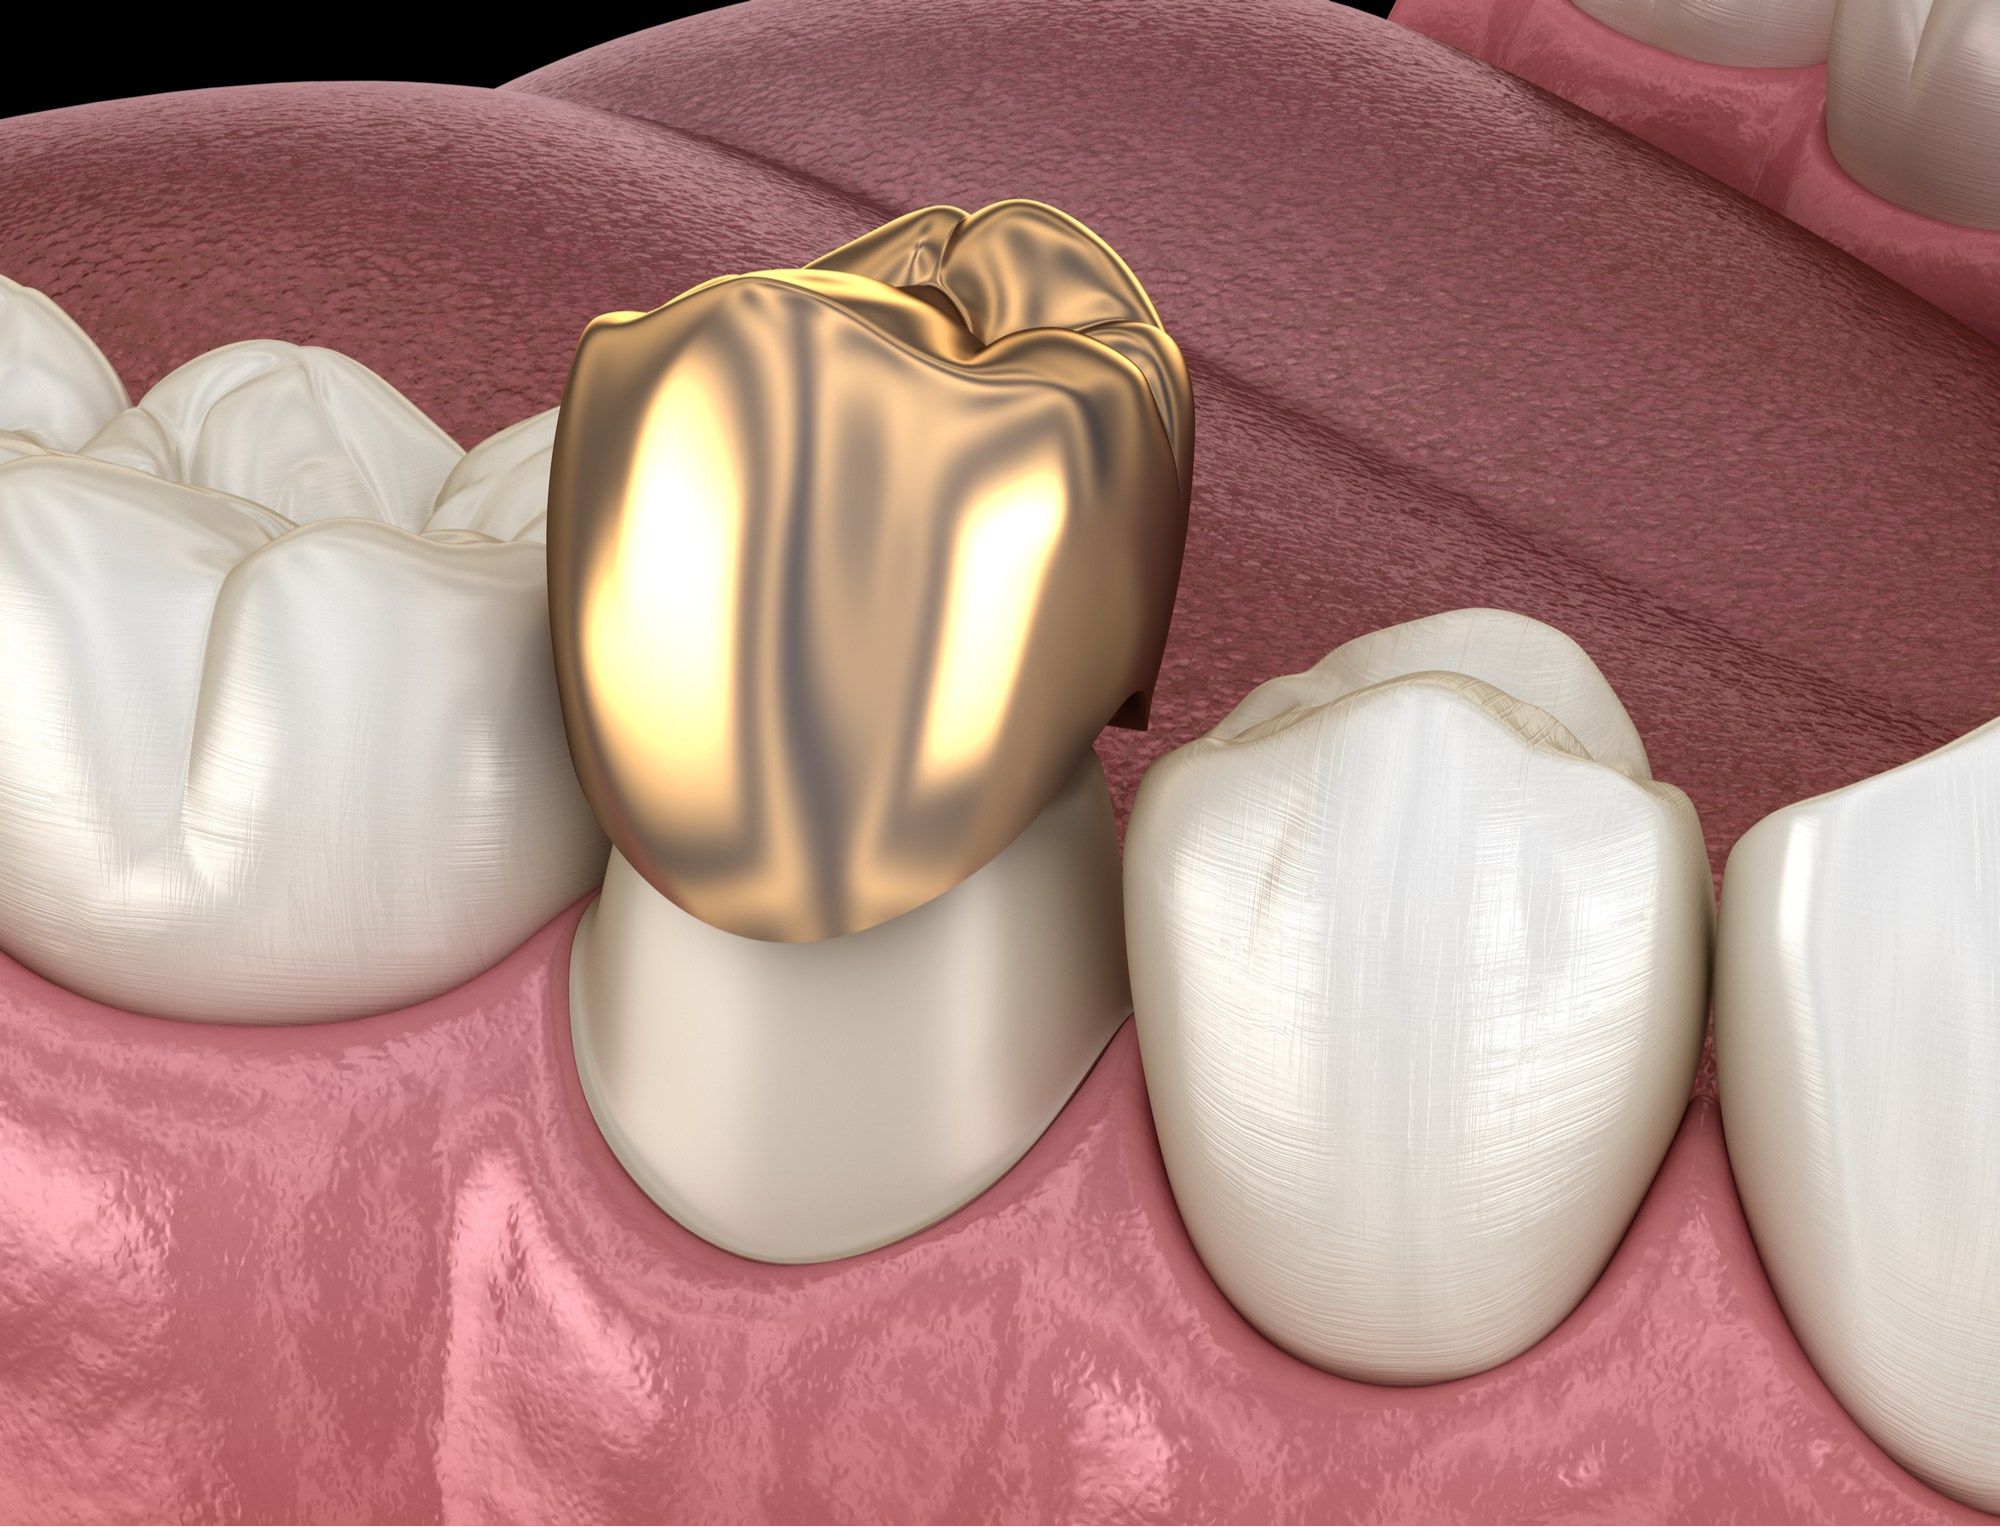 ما هي عملية تركيب الأسنان الثابتة الأمامية بمصر؟